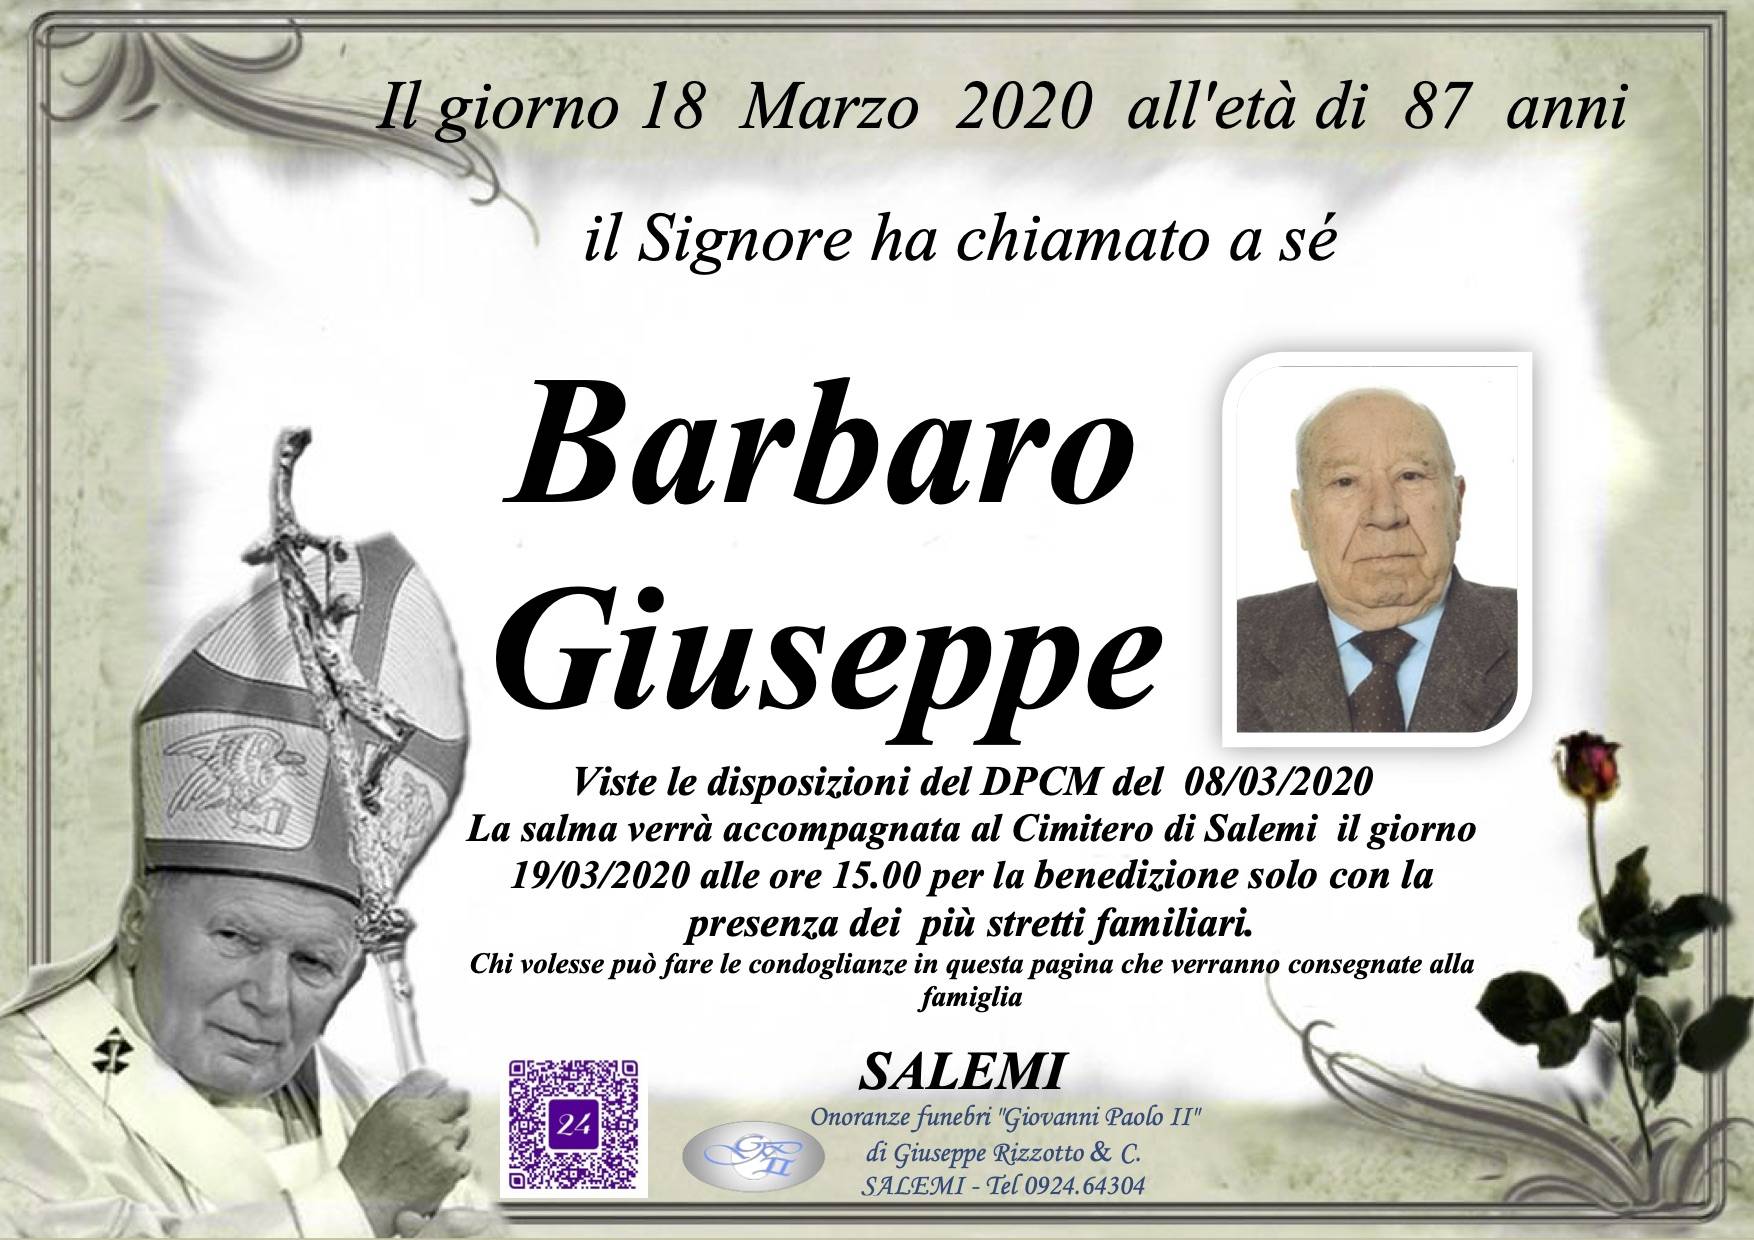 Giuseppe Barbaro